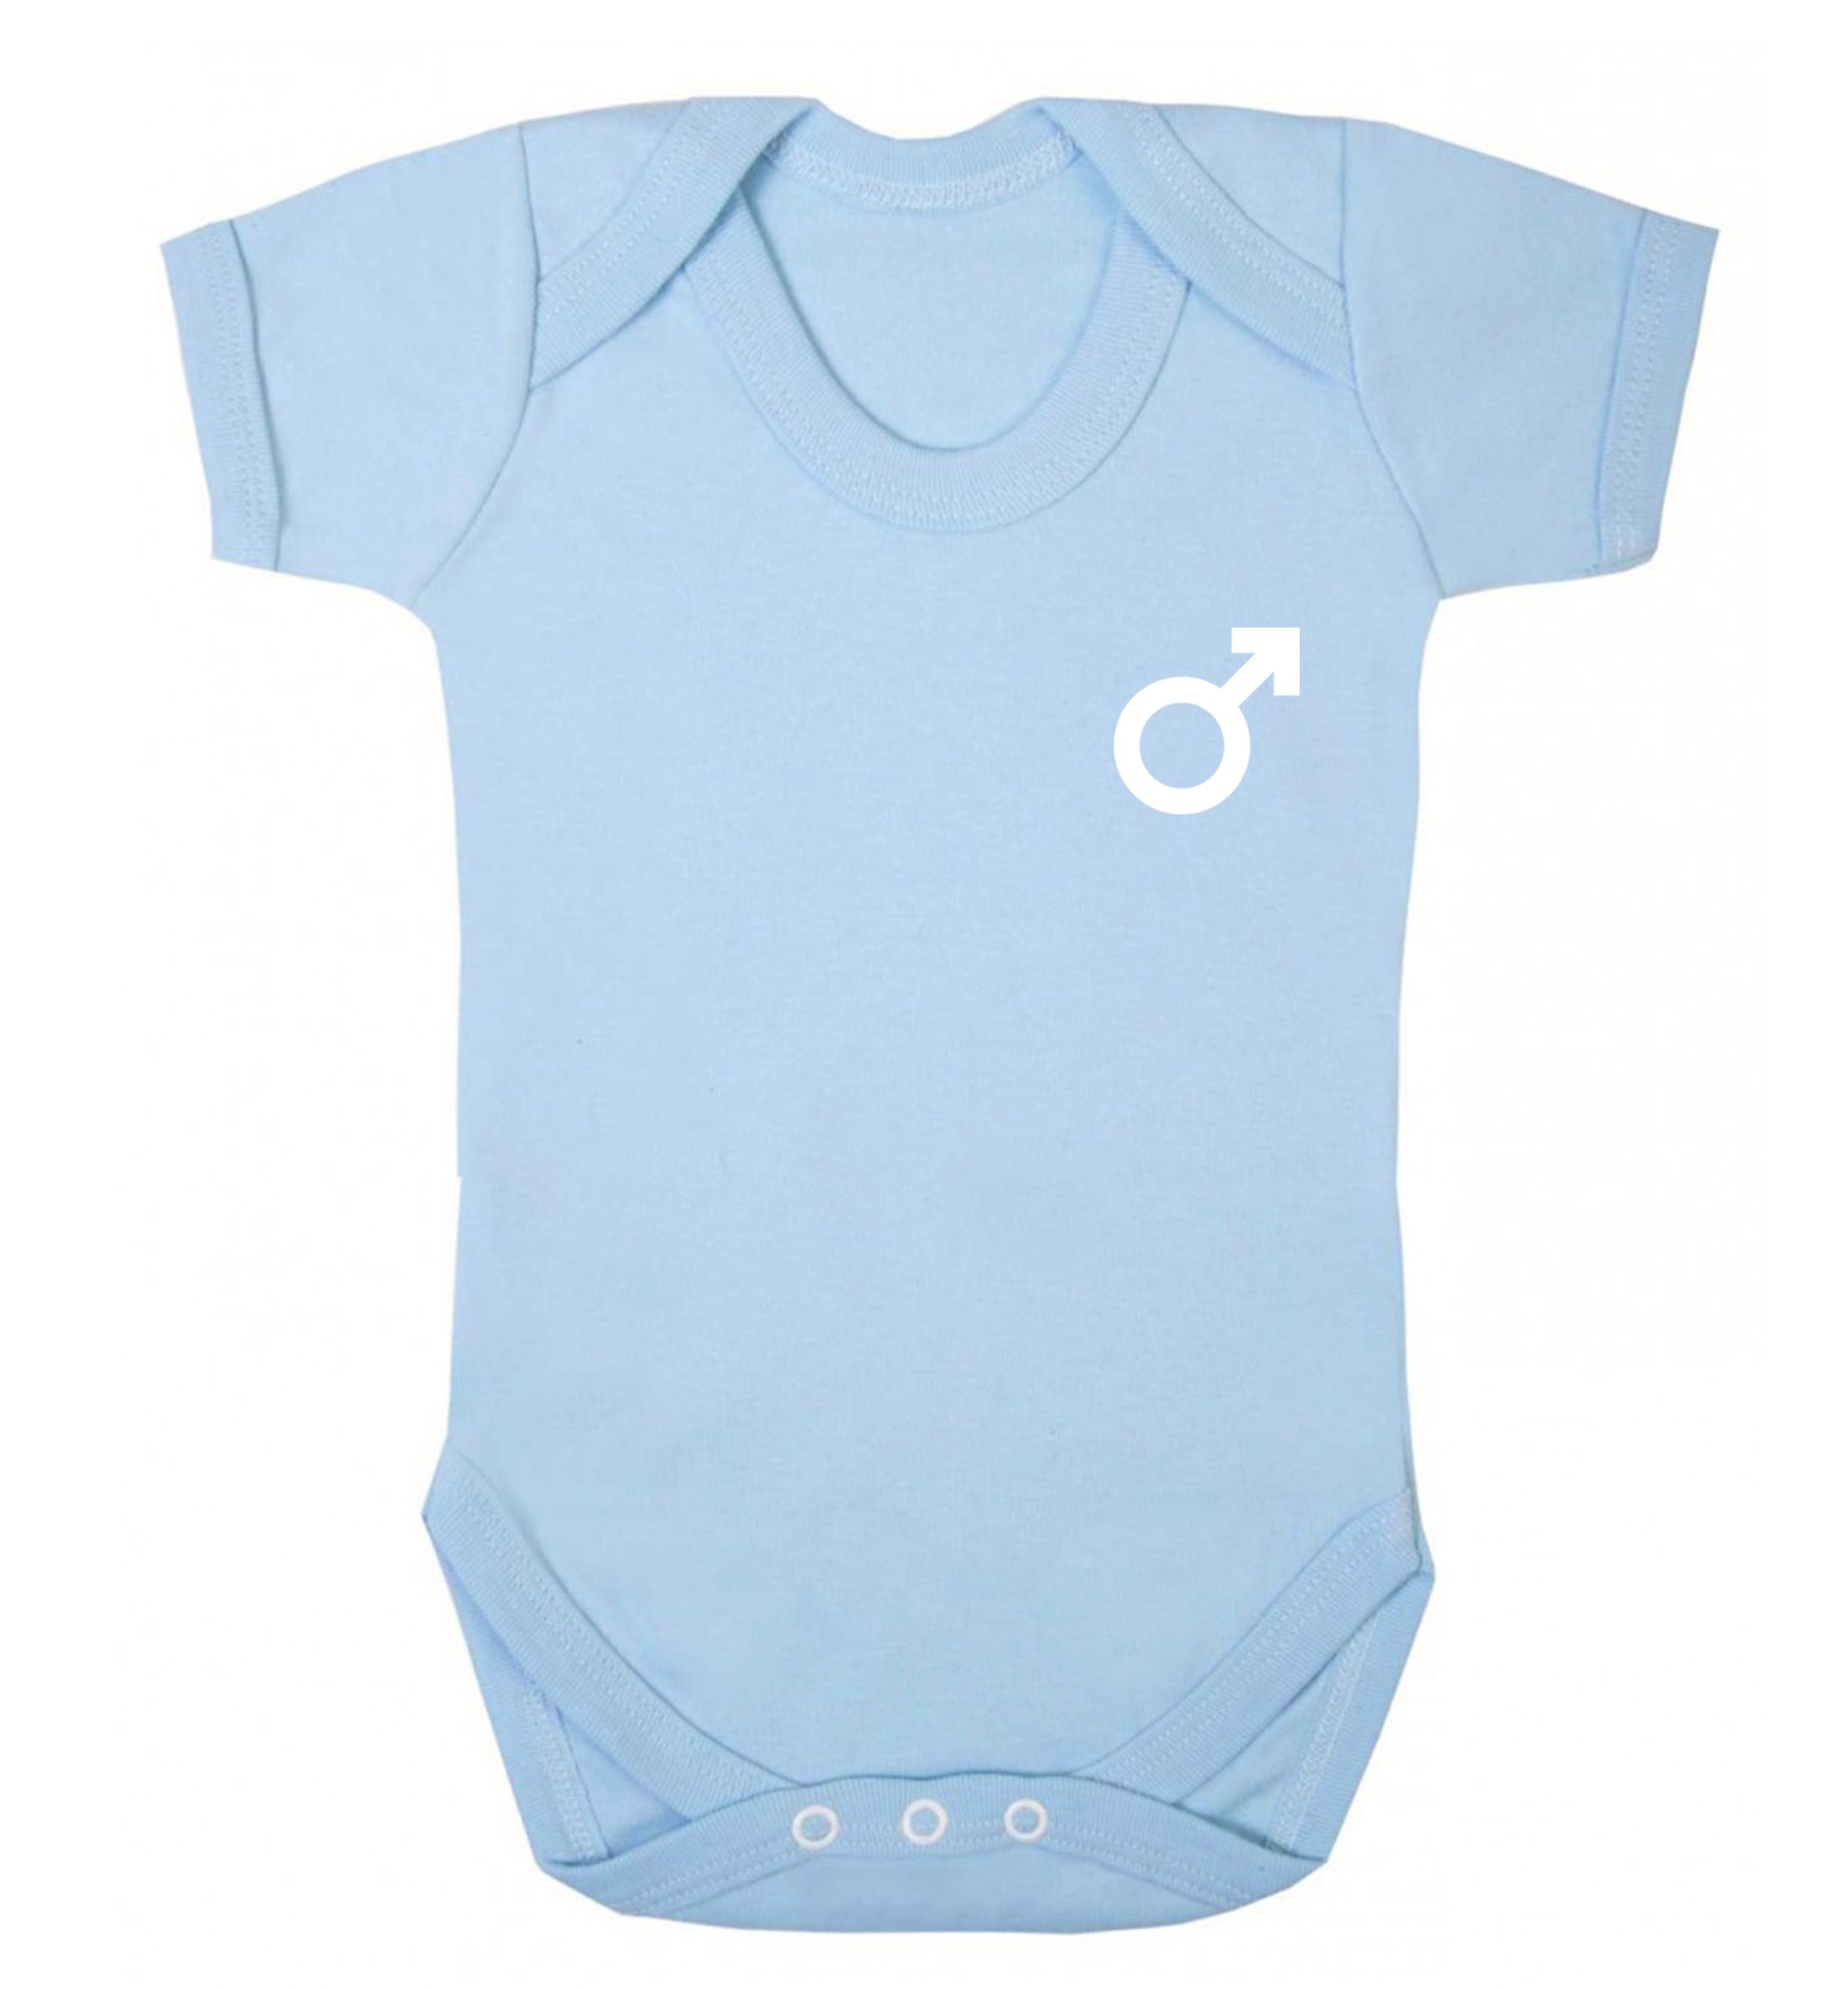 Male symbol pocket Baby Vest pale blue 18-24 months